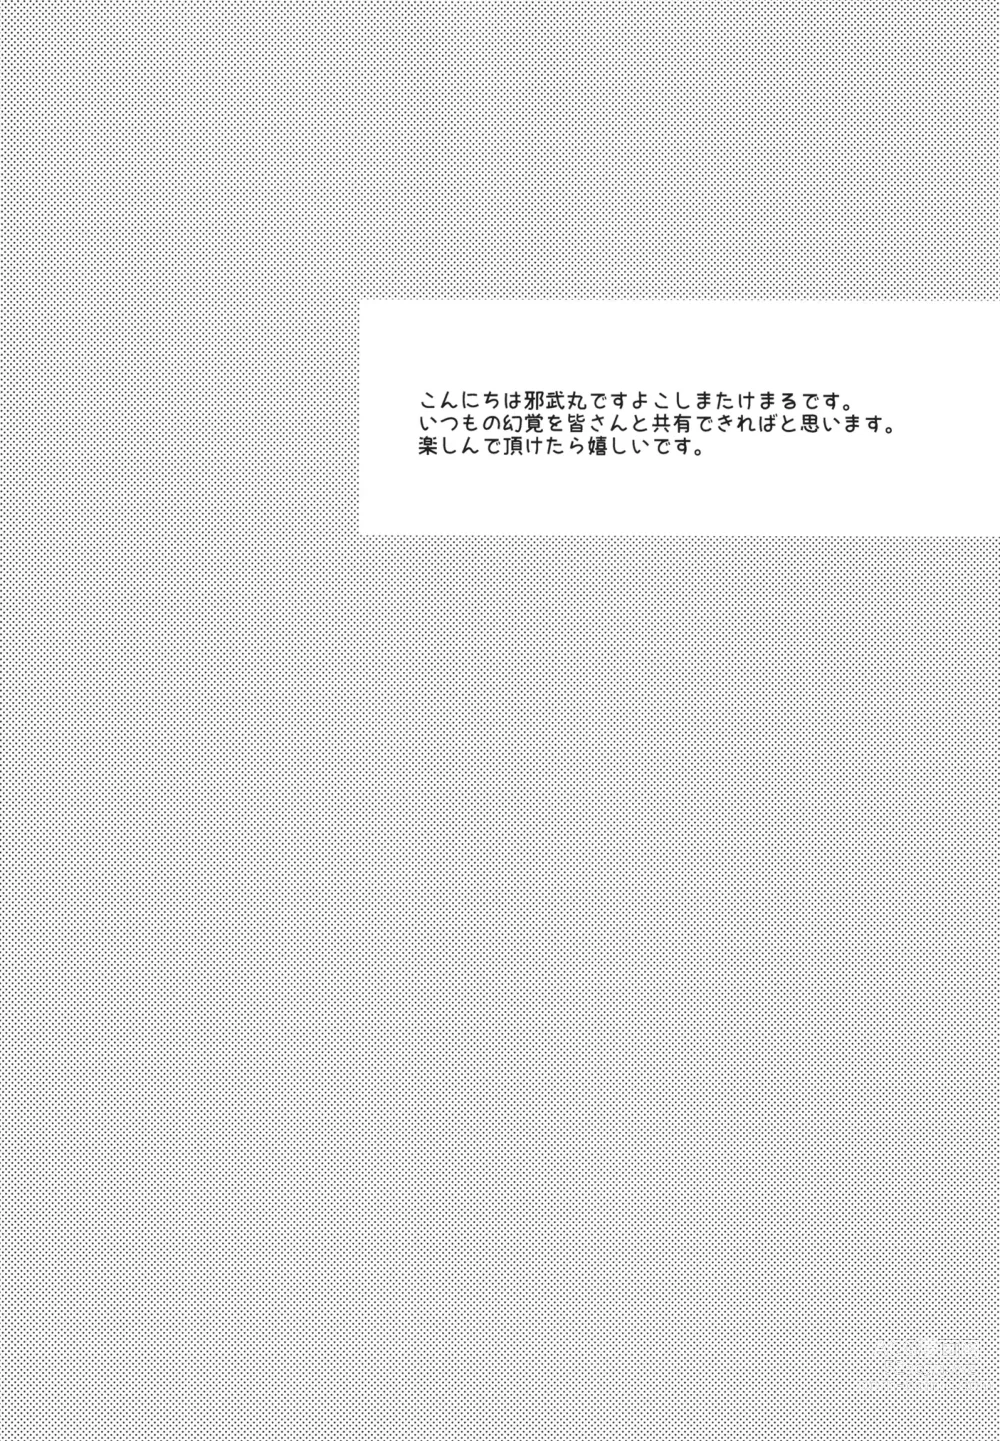 Page 3 of doujinshi NISHIZUMI SHIMADA Iemoto ZERO